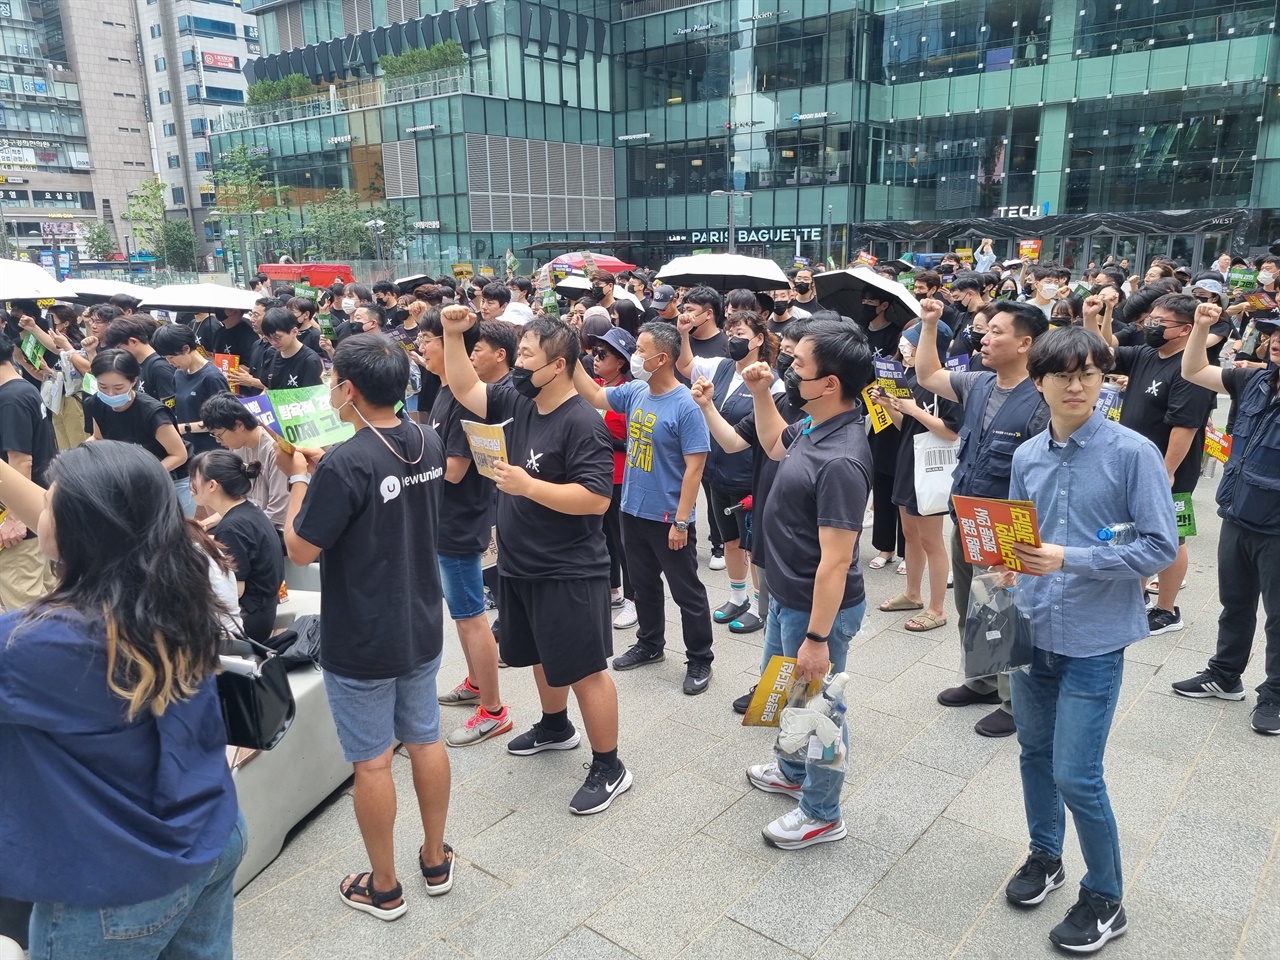 화섬식품노조 카카오지회가 판교역 앞에서 집회를 개최했다.